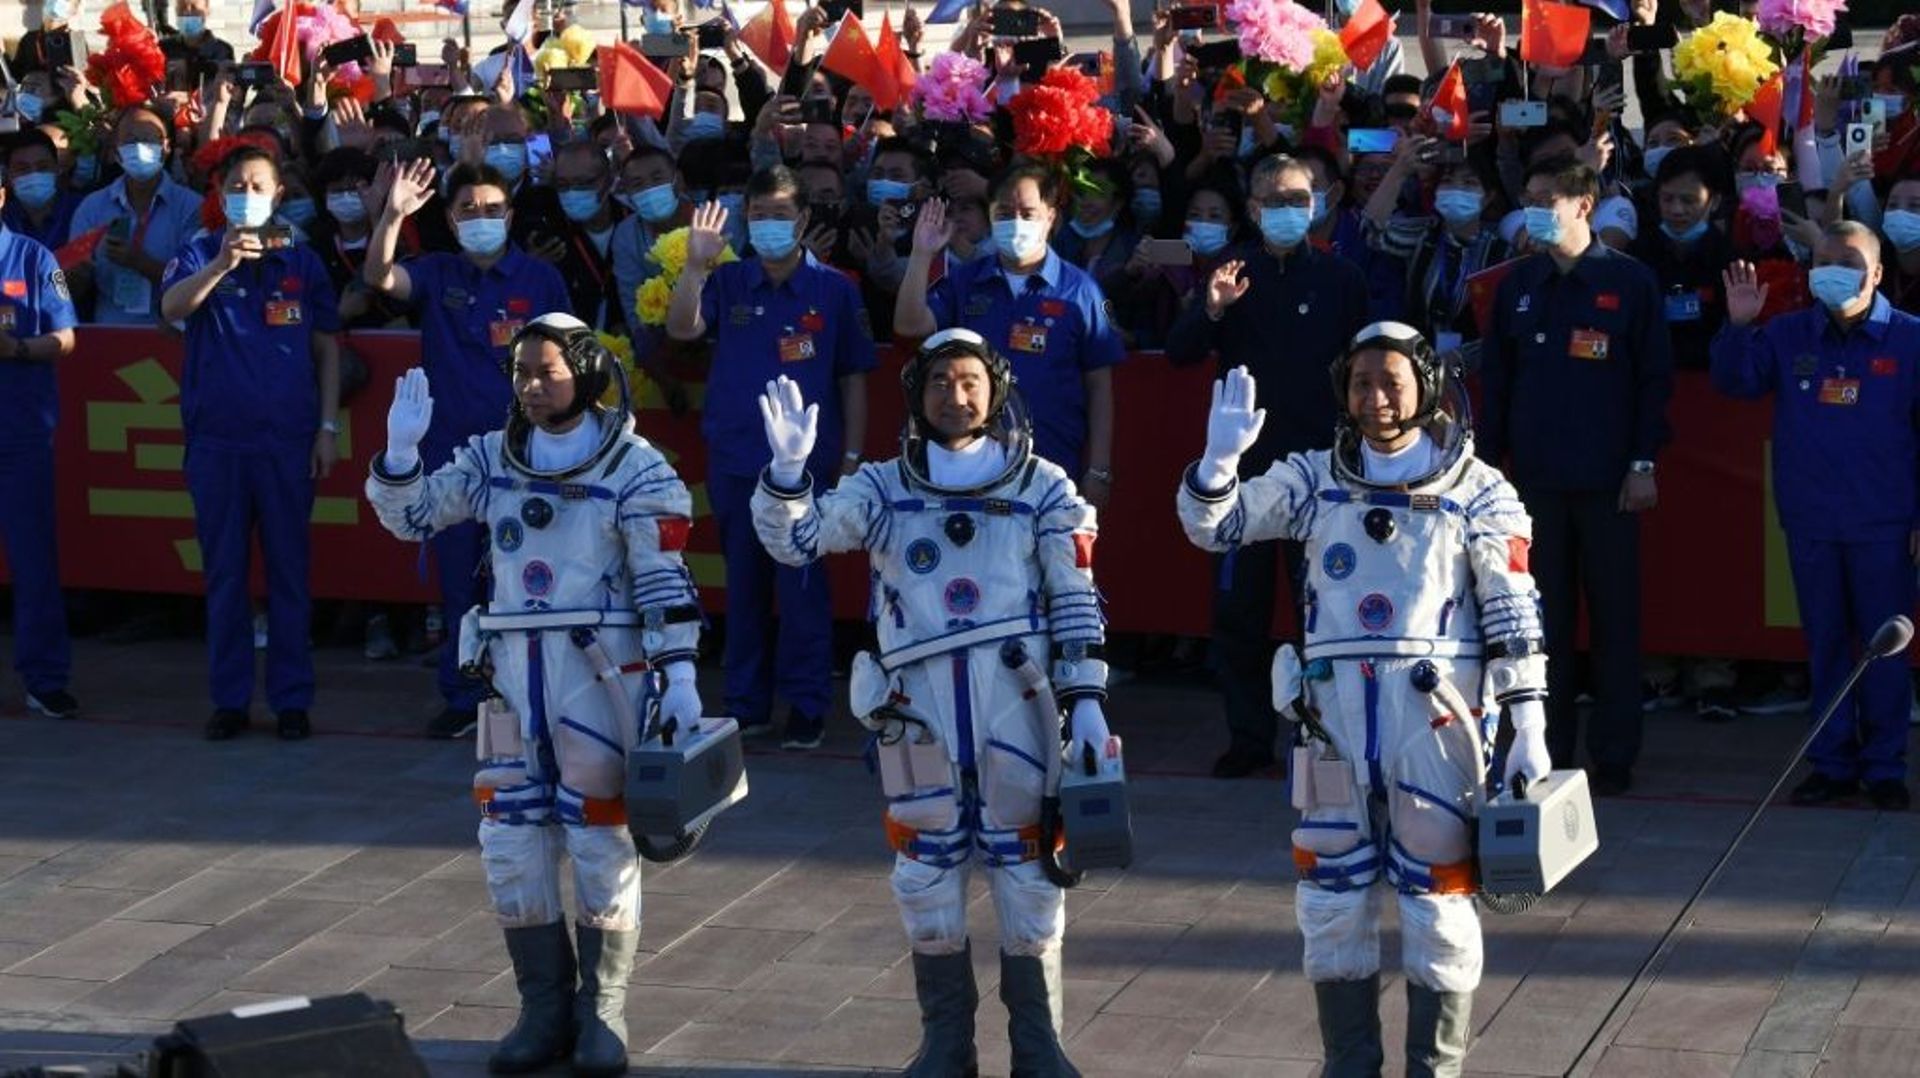 Les astronautes chinois Nie Haisheng (c), Liu Boming (d) et Tang Hongbo salue la foule avant leur décollage à bord de la fusée Longue-Marche 2F au Centre de lancement spatial de Jiuquan, le 17 juin 2021 en Chine